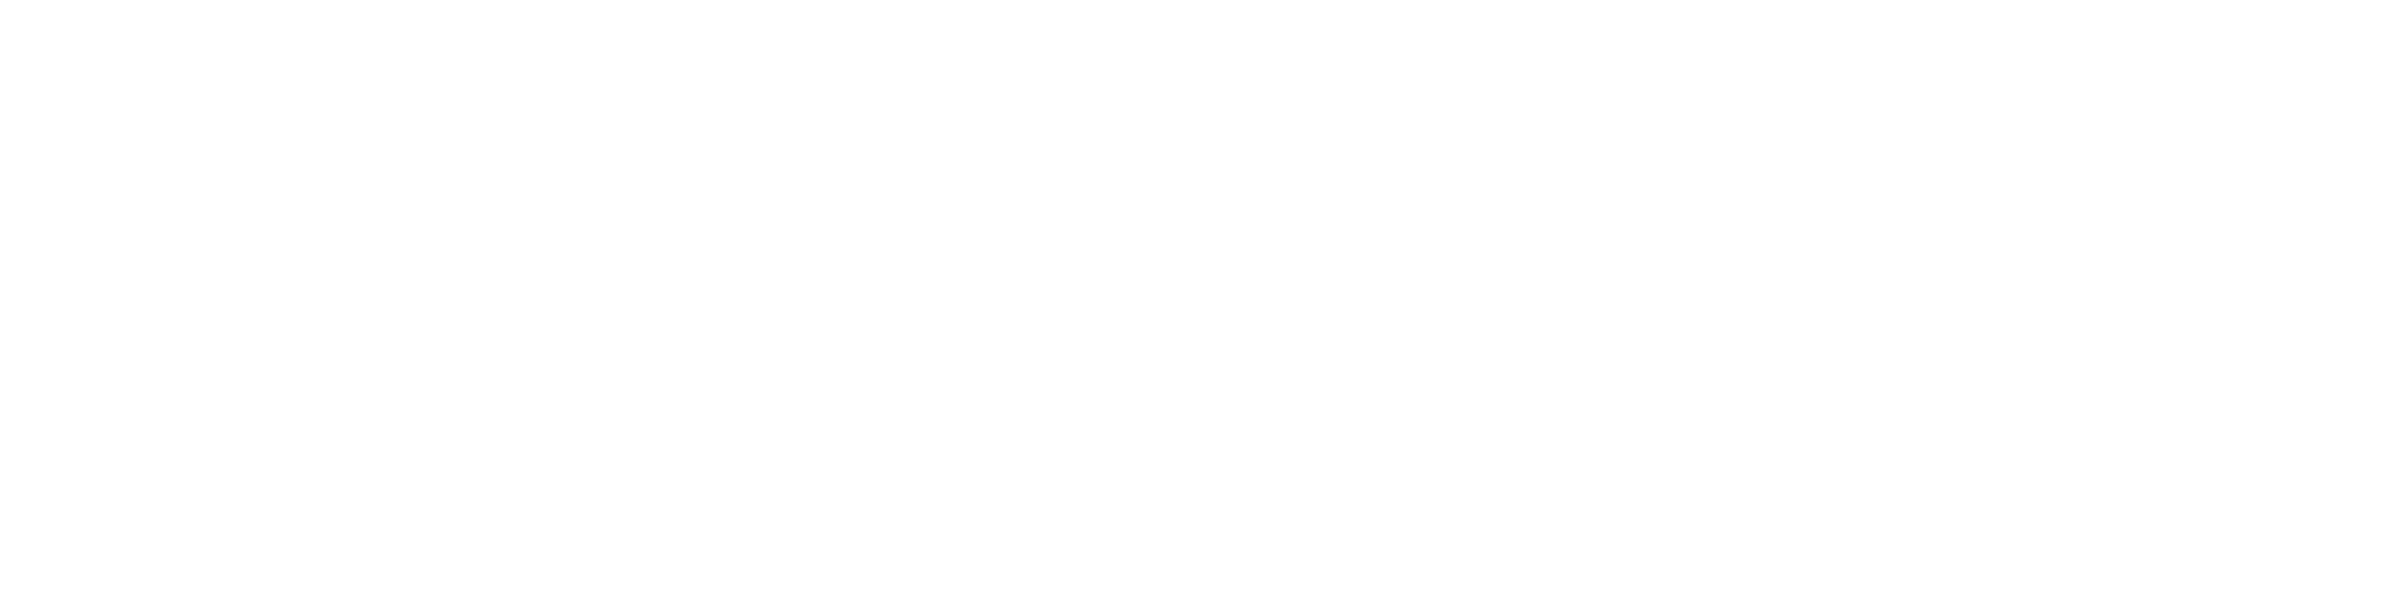 Hamelin-Laie International School